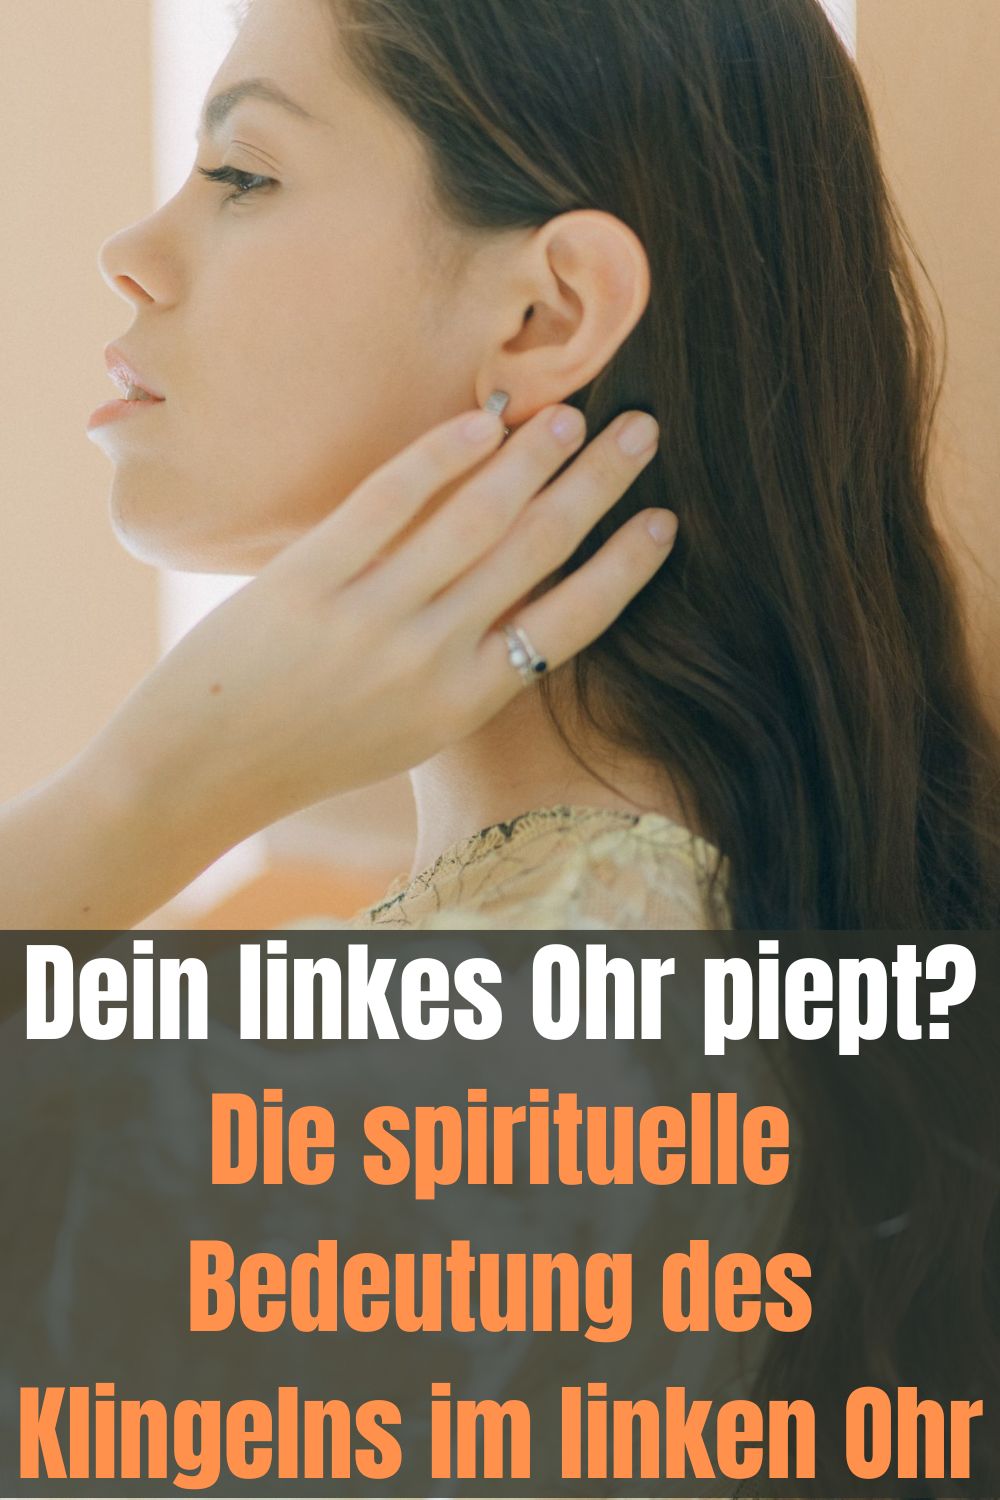 Dein-linkes-Ohr-piept-Die-spirituelle-Bedeutung-des-Klingelns-im-linken-Ohr